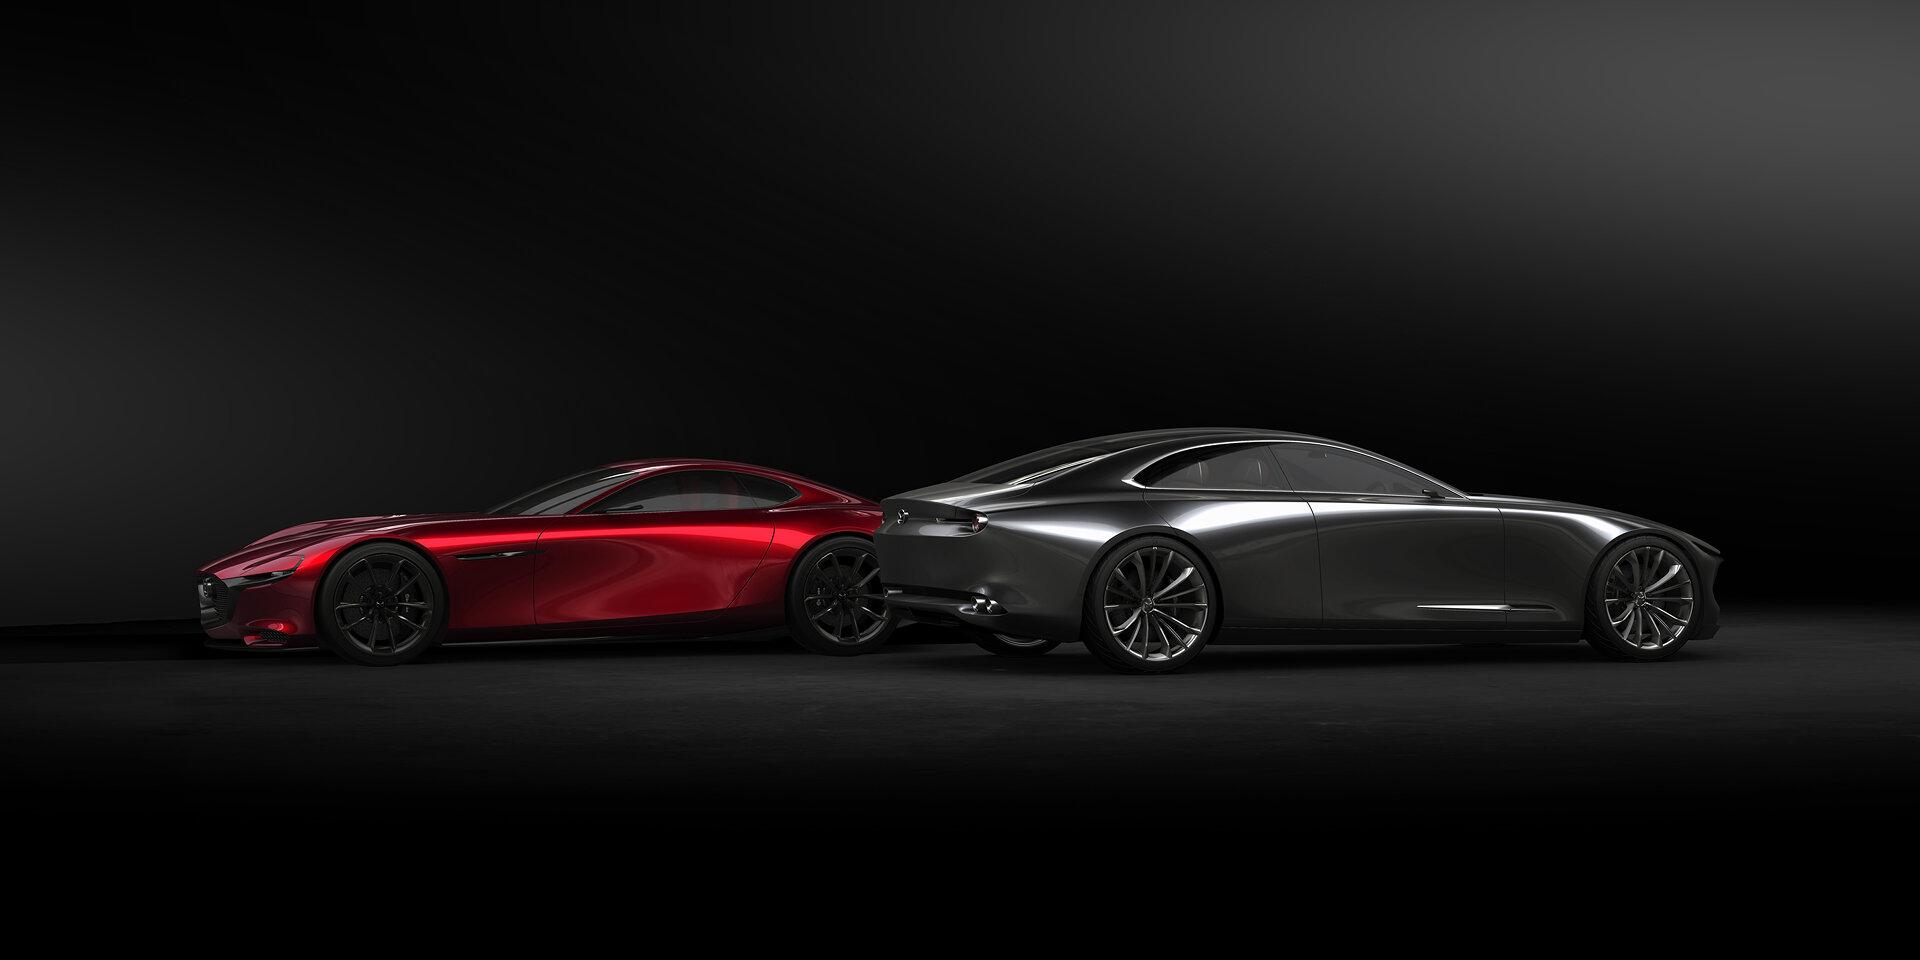 El Mazda Vision Coupé gana el premio “Concept Car of the Year” en Ginebra